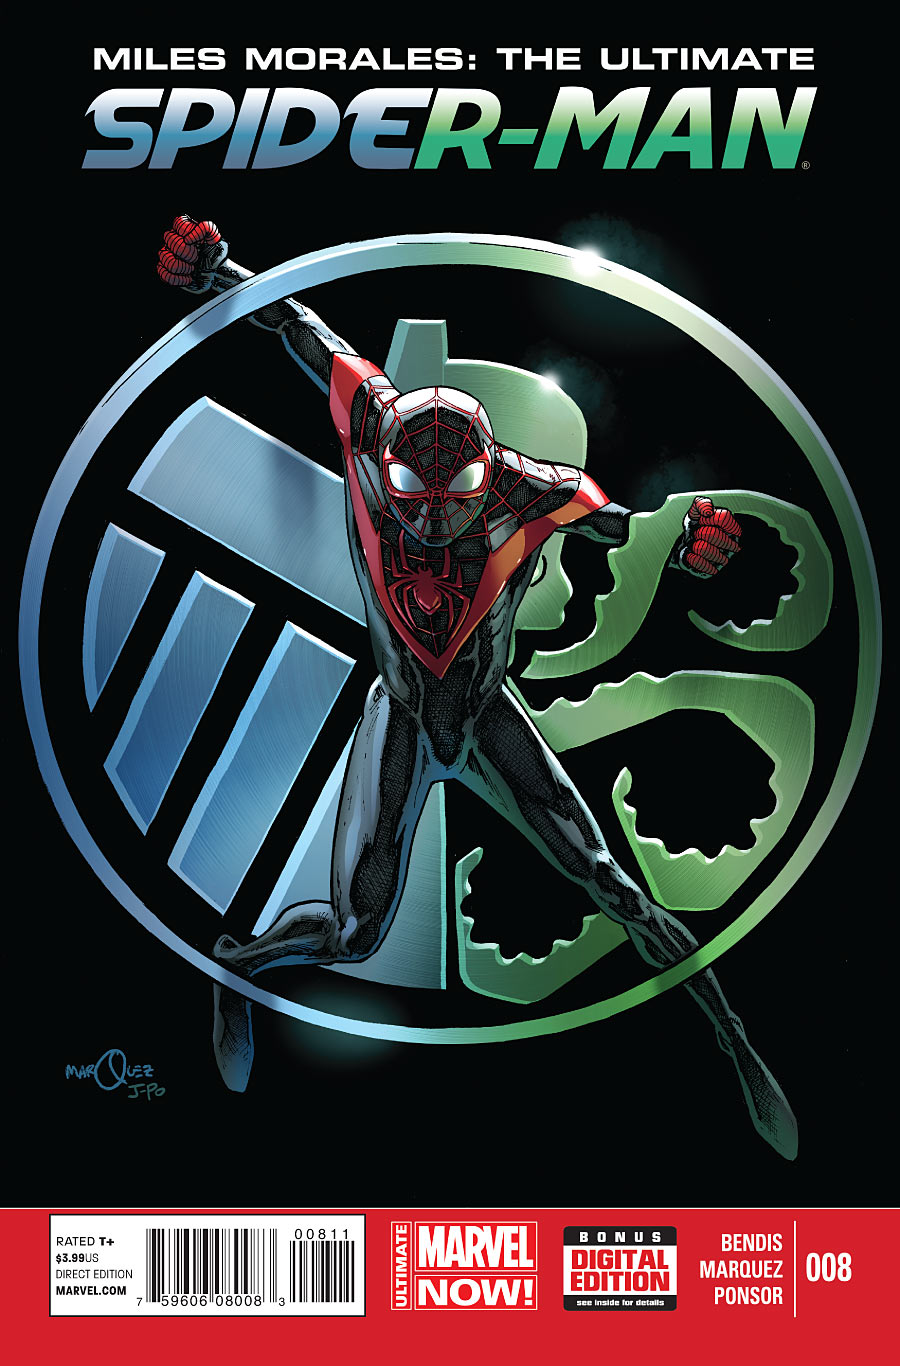 Miles Morales: Ultimate Spider-Man Vol 1 8 | Marvel Database | Fandom